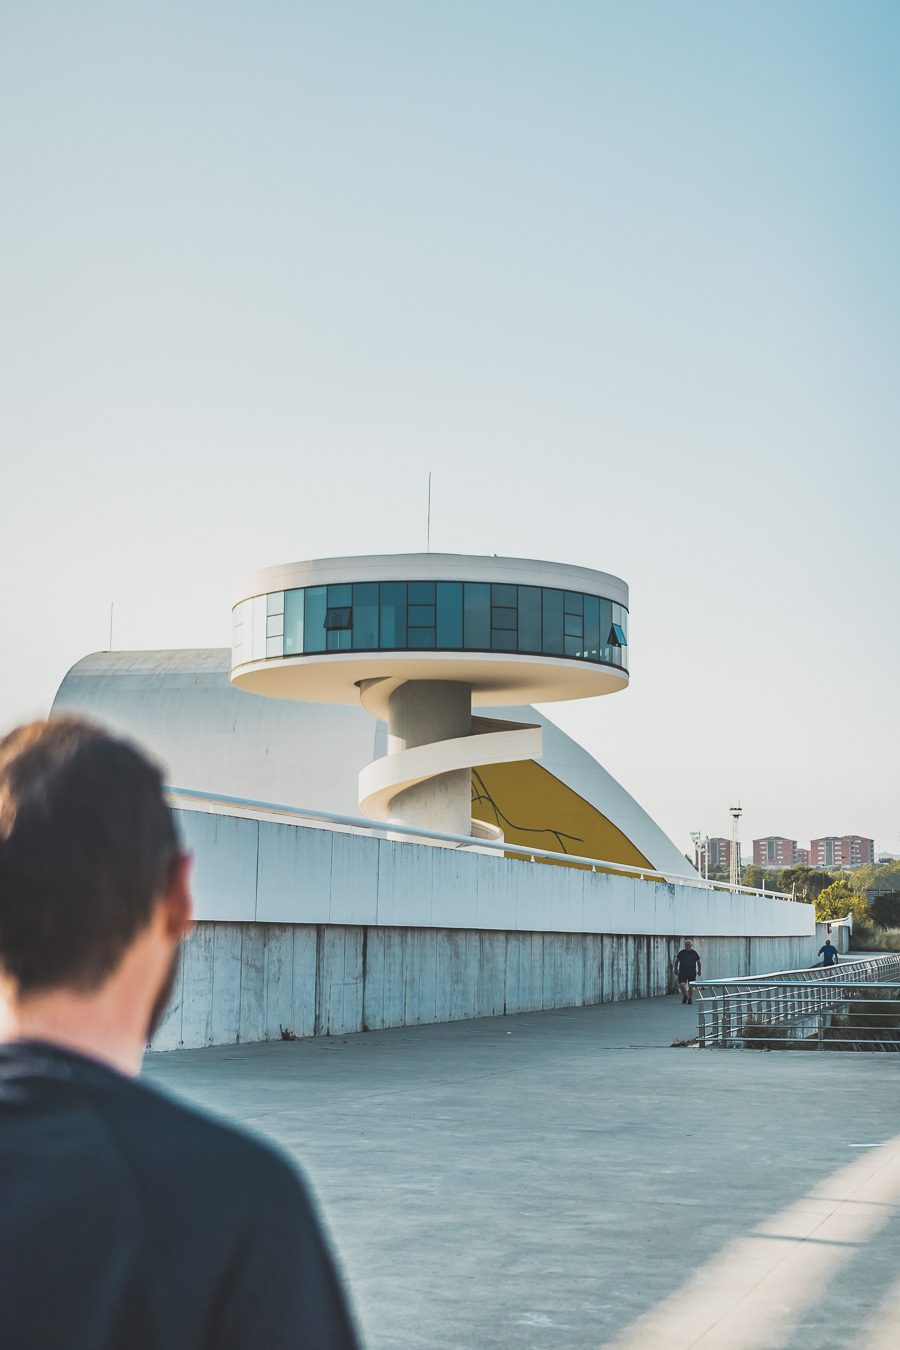 Explorez Aviles en Espagne, une ville des Asturies. Allez au Centre Niemeyer, passez du bon temps au pont Saint-Sébastien. Vivez un été en Espagne, entre traditions locales et aventures modernes. Réservez votre escapade et laissez-vous séduire par le nord de l'Espagne. Les Asturies en Espagne vous attendent !